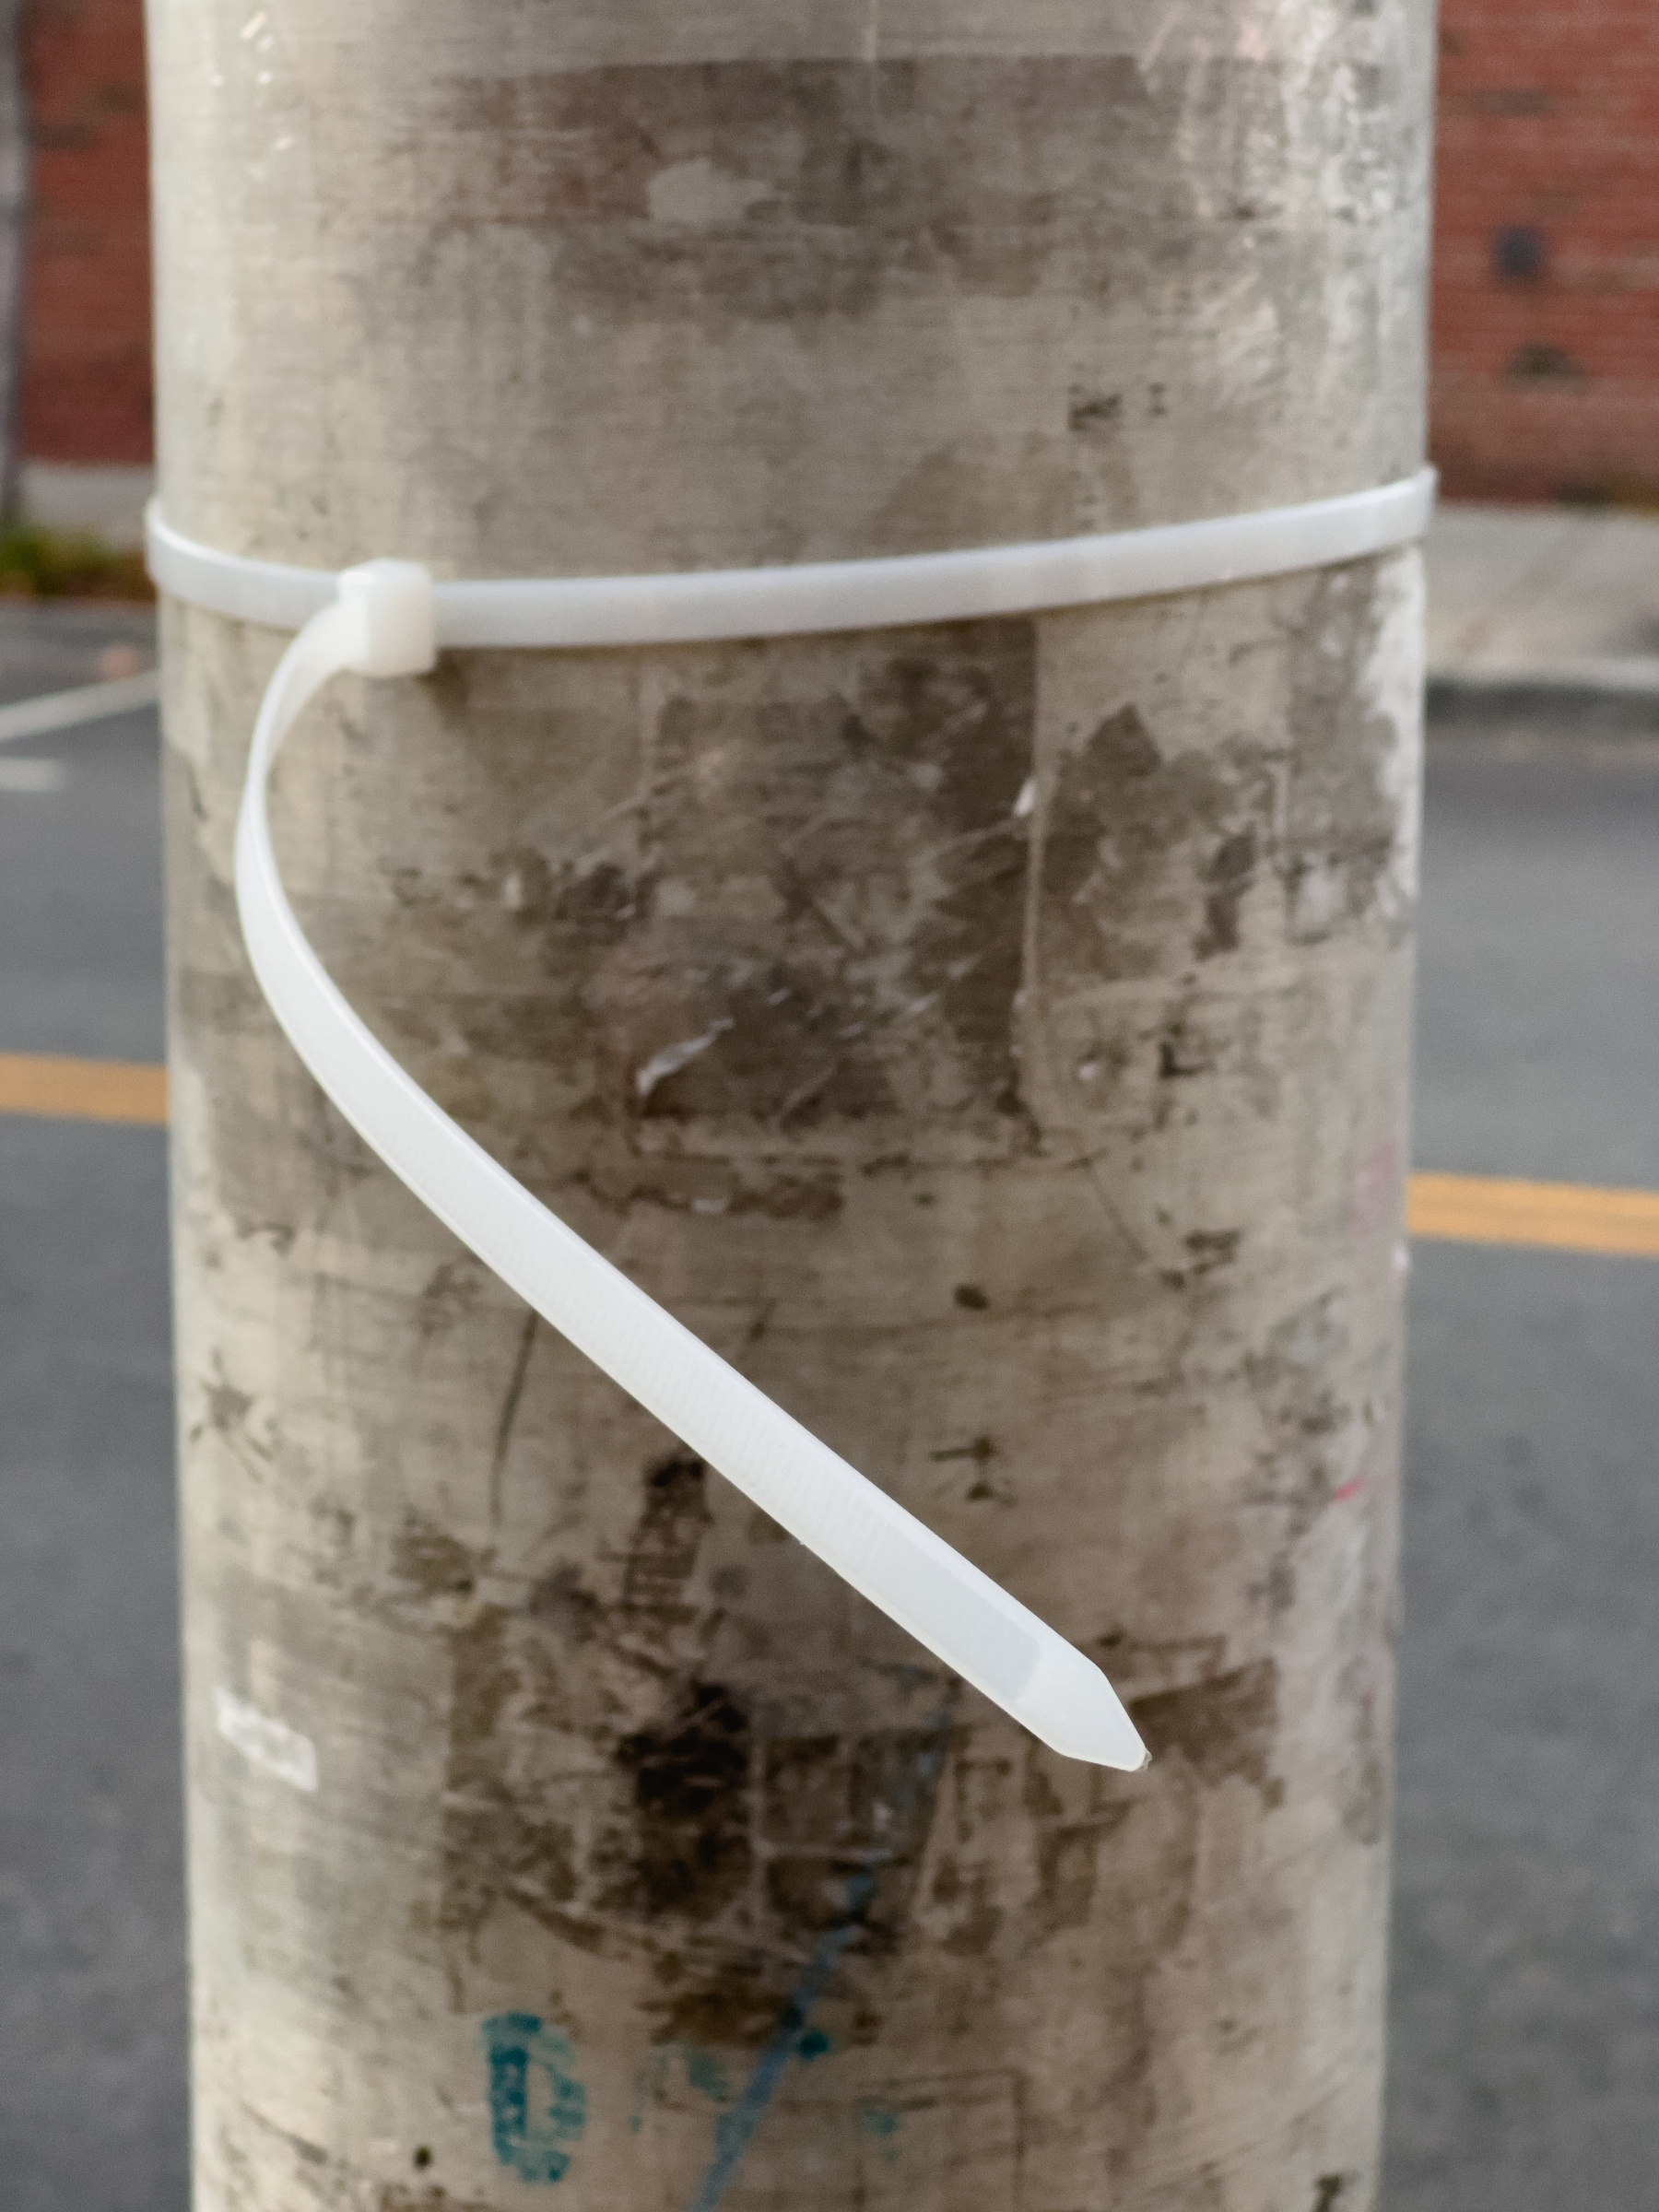 Closeup of white zip tie on metal utility pole.